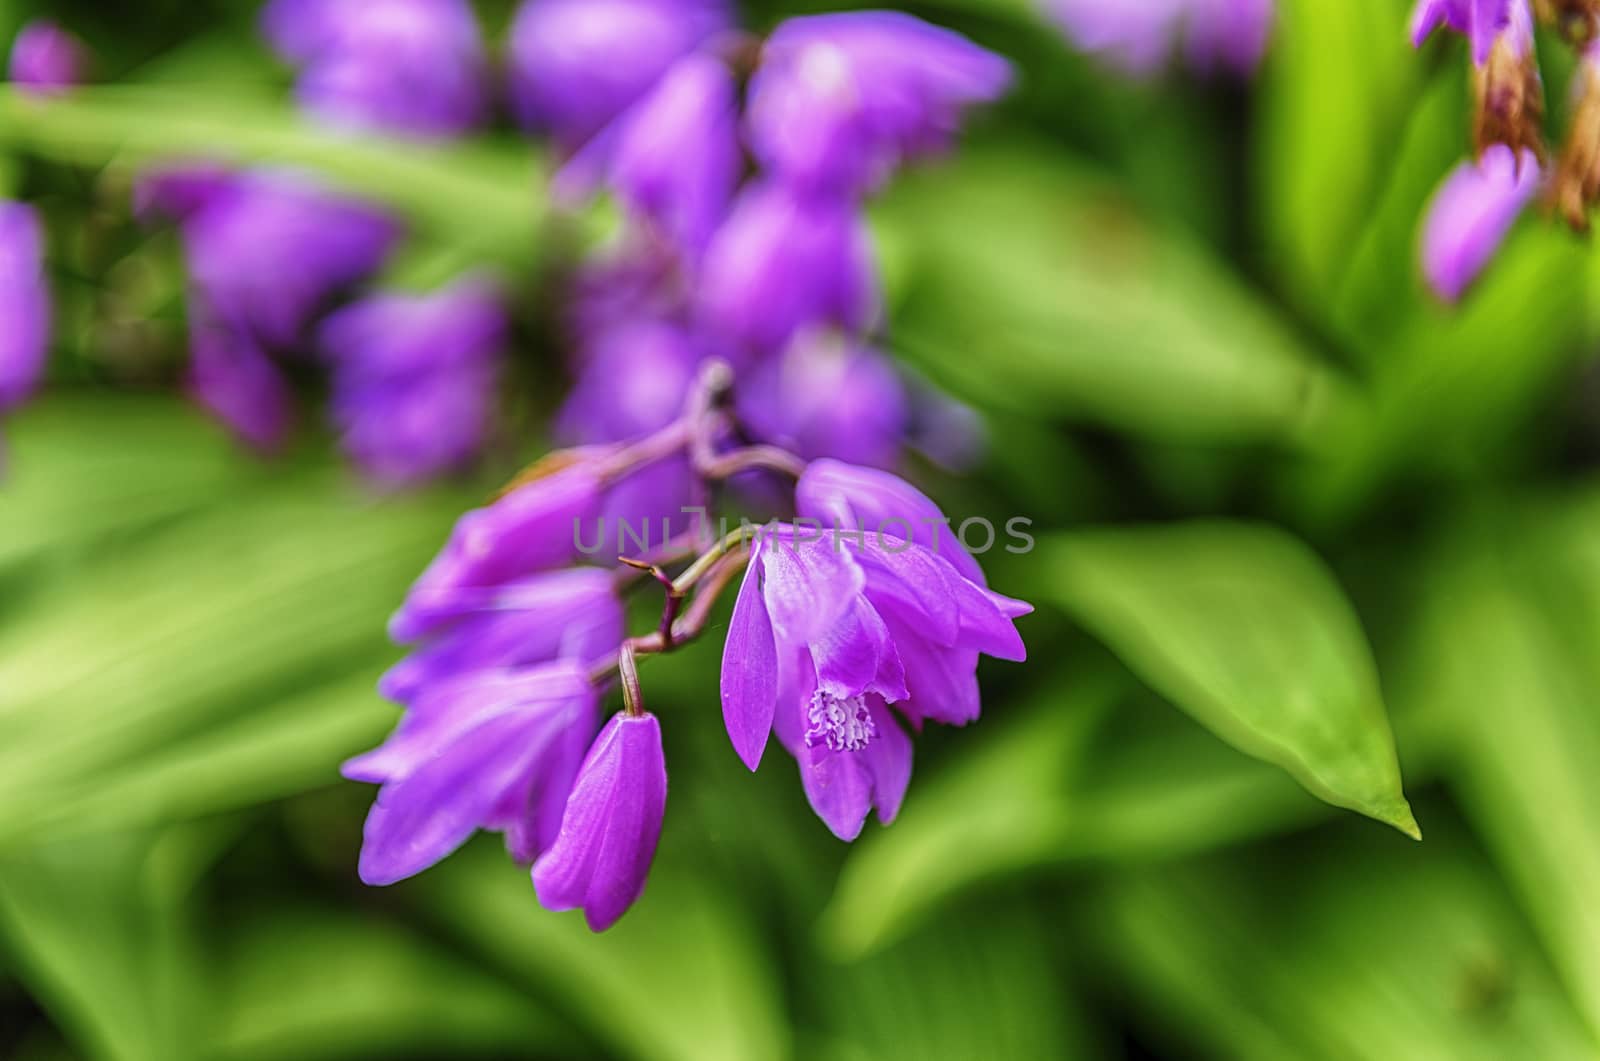 Closeup of purple flowers in a green garden by marcorubino